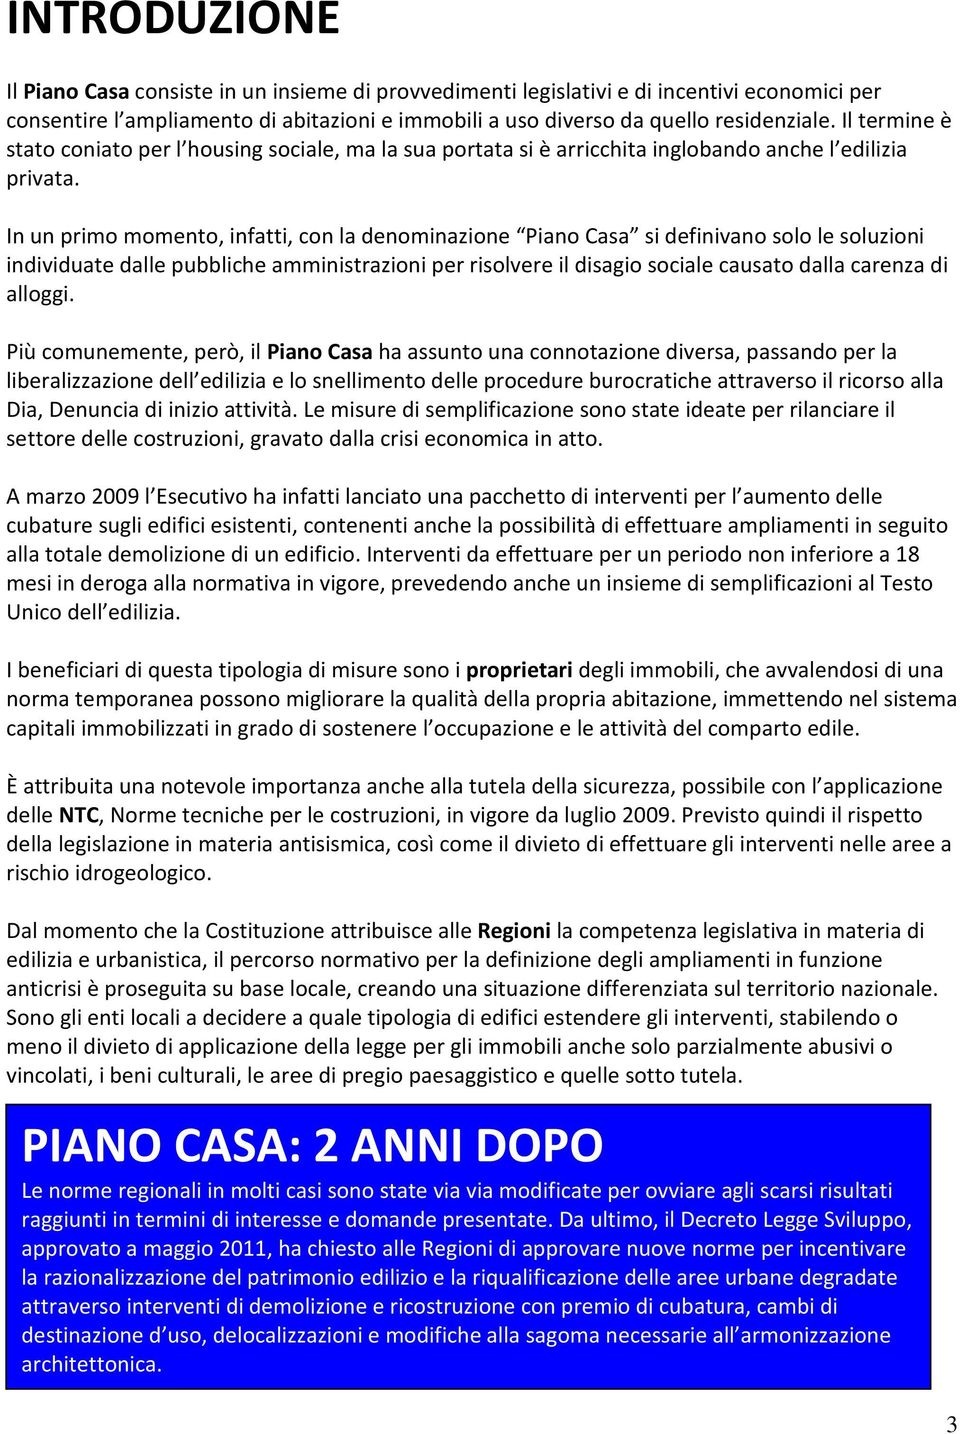 Guida Al Piano Casa Della Regione Liguria Pdf Free Download